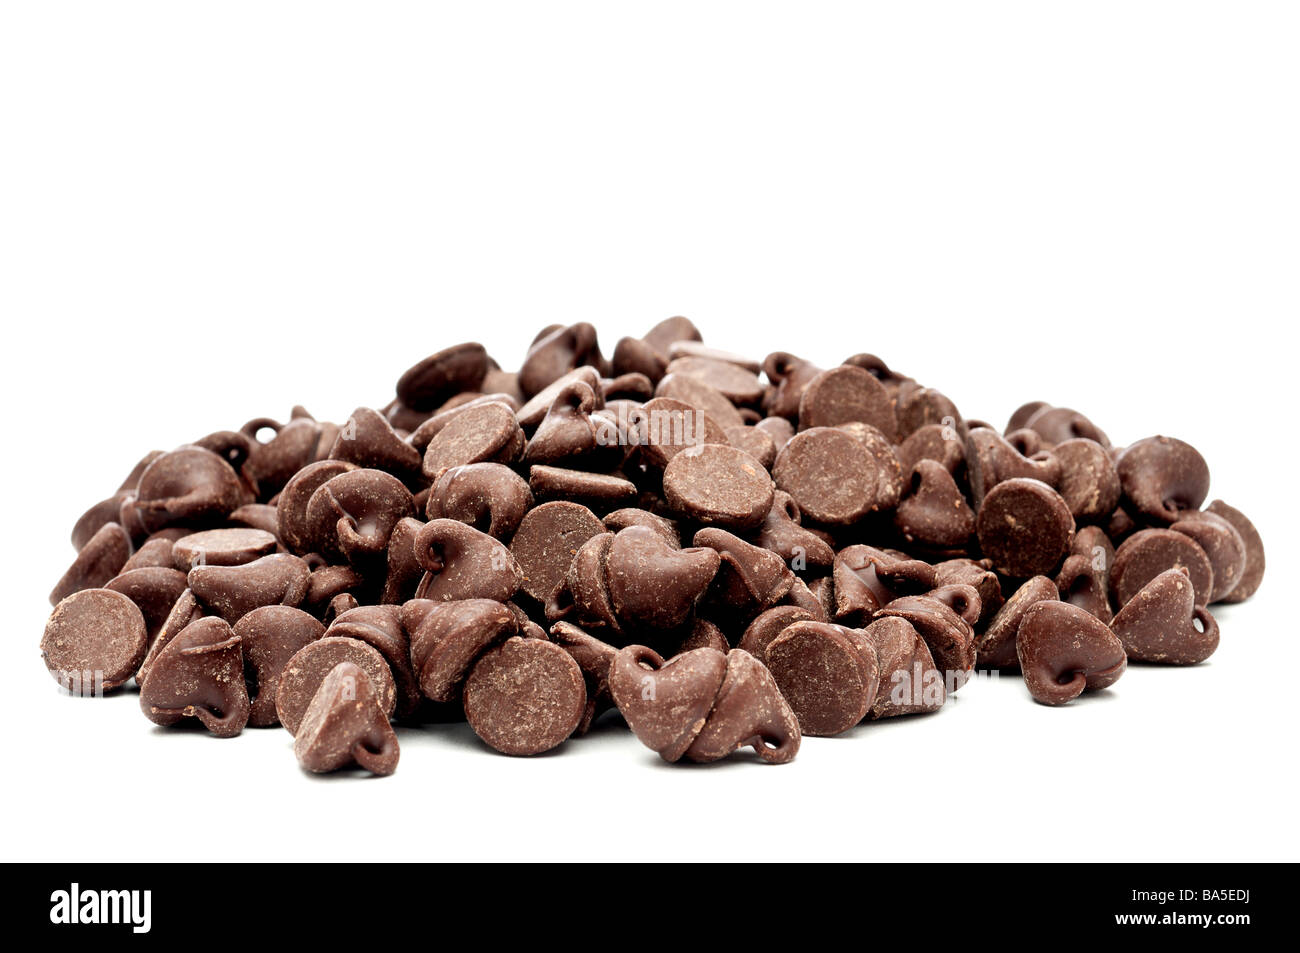 Une des images horizontales d'un tas de copeaux de chocolat Banque D'Images